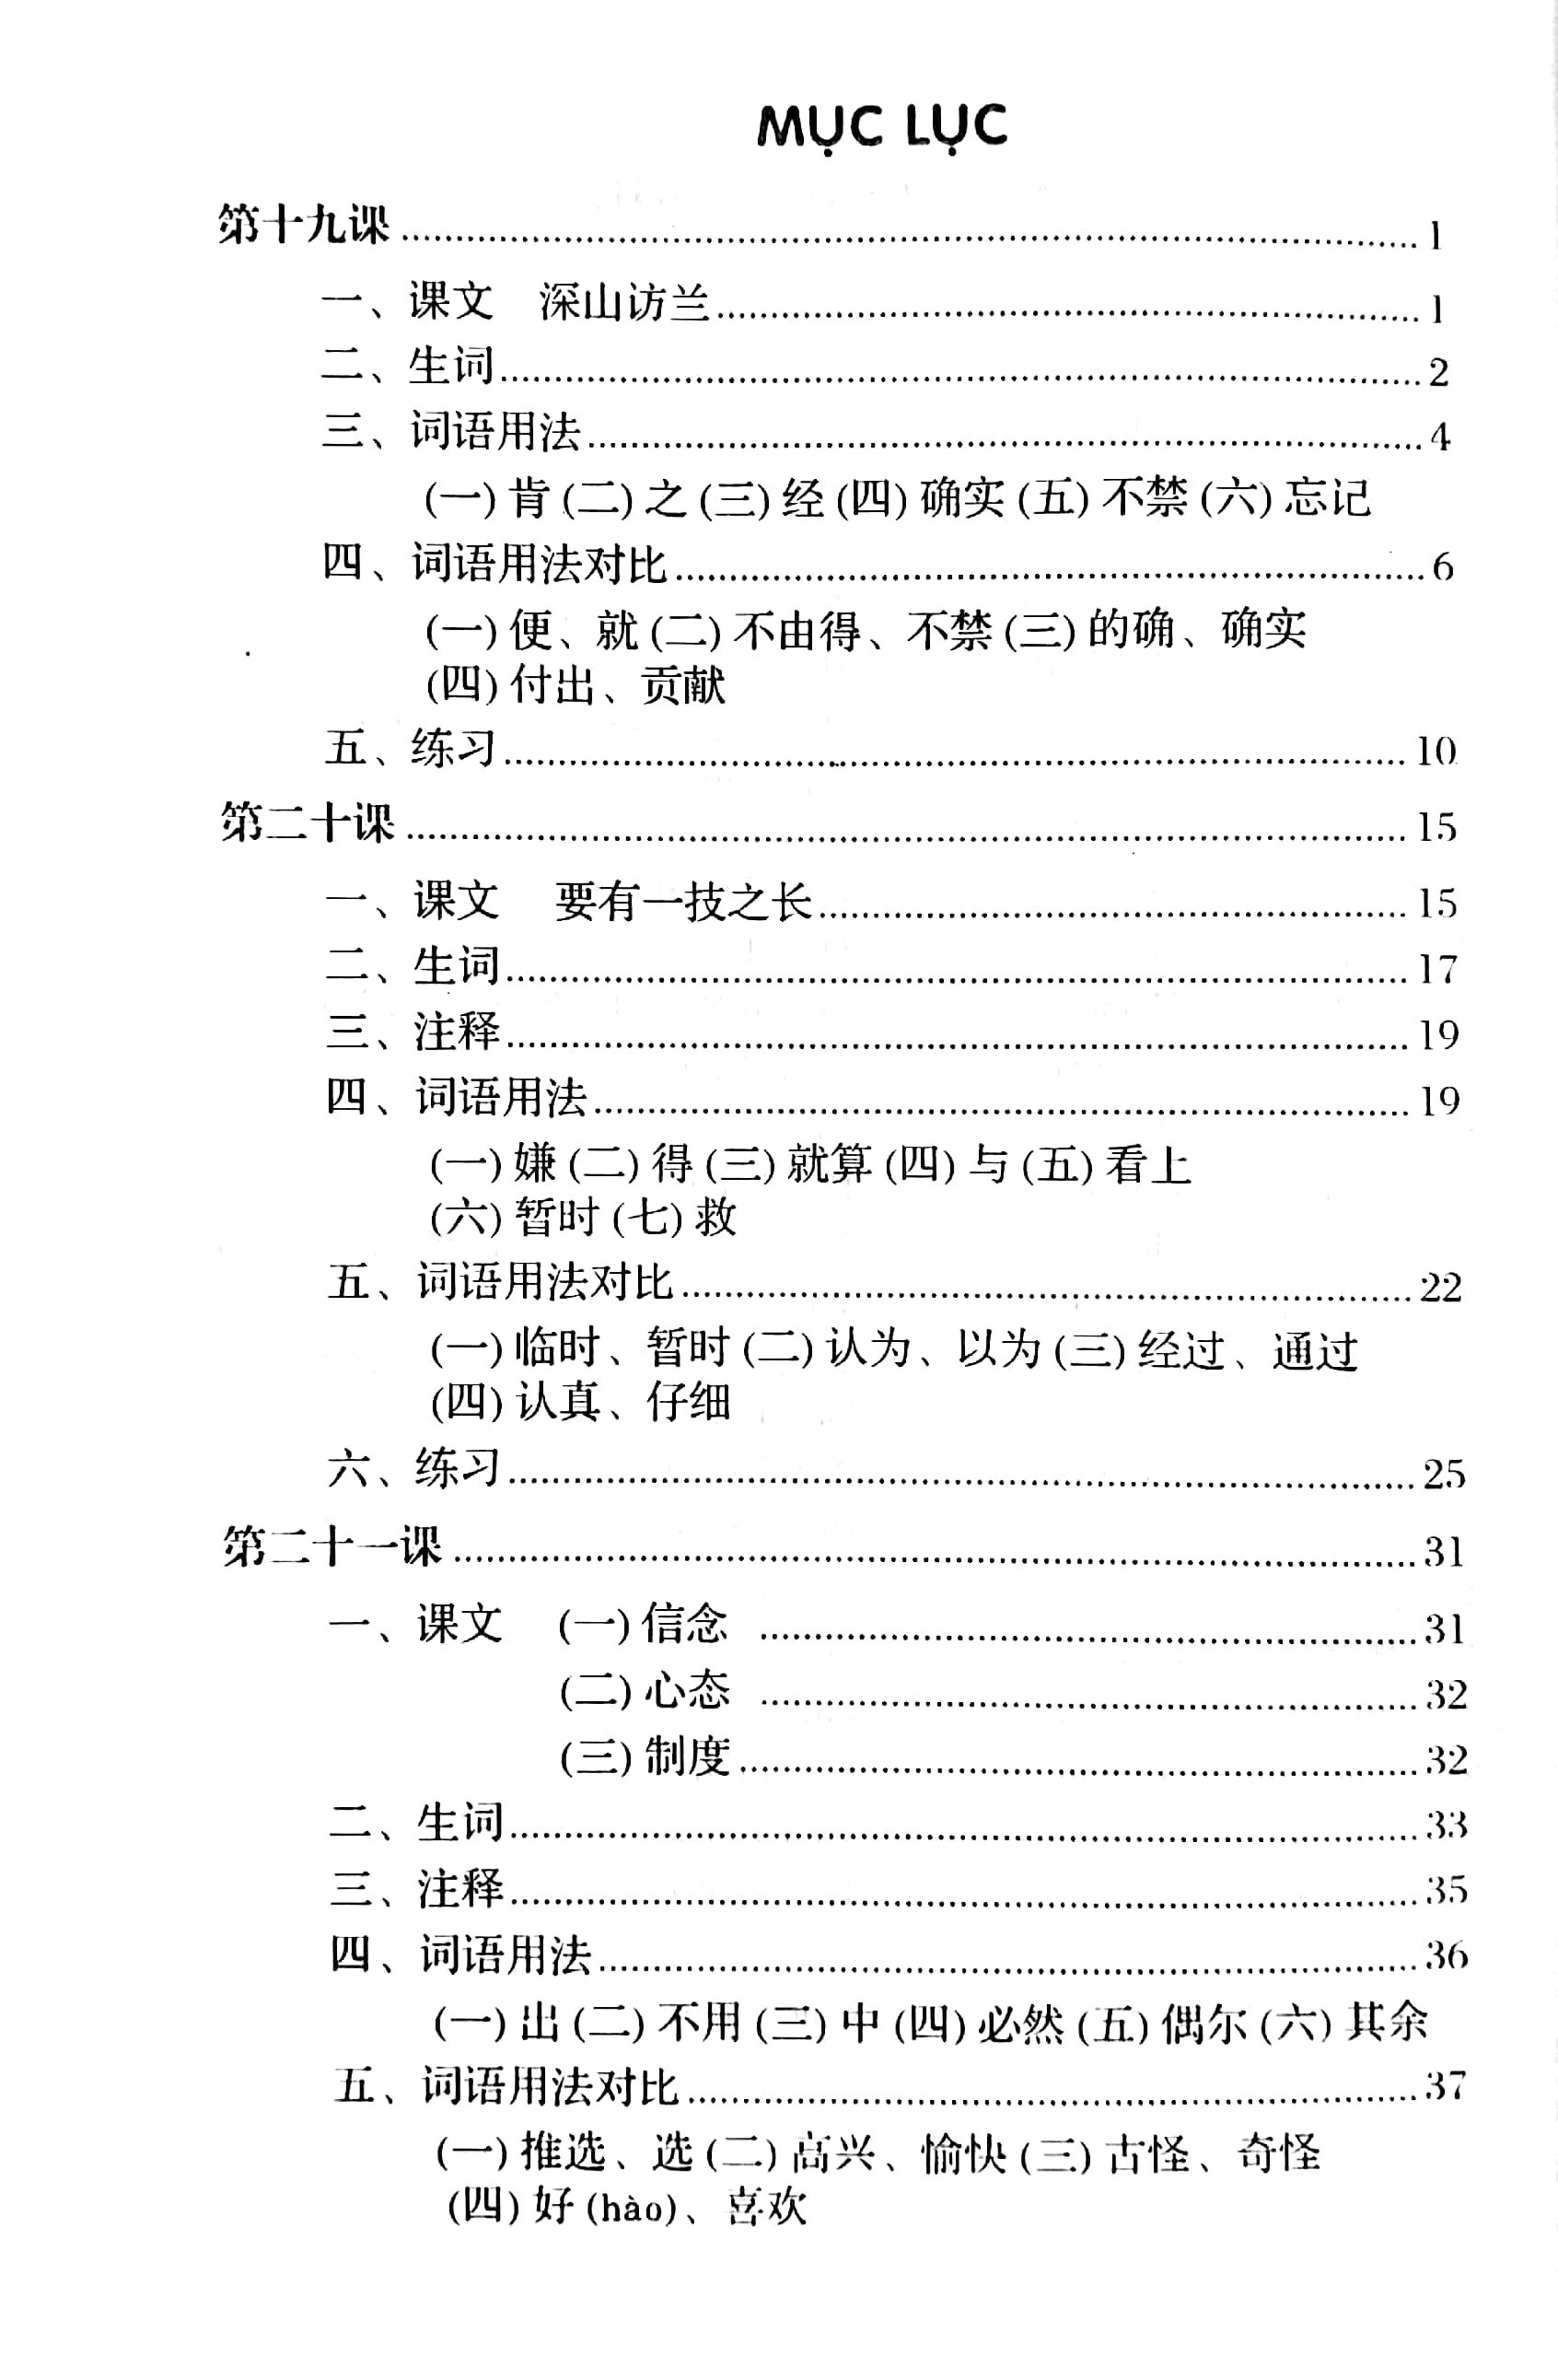 Giáo Trình Hán Ngữ Trung Cấp - Tập 2 PDF